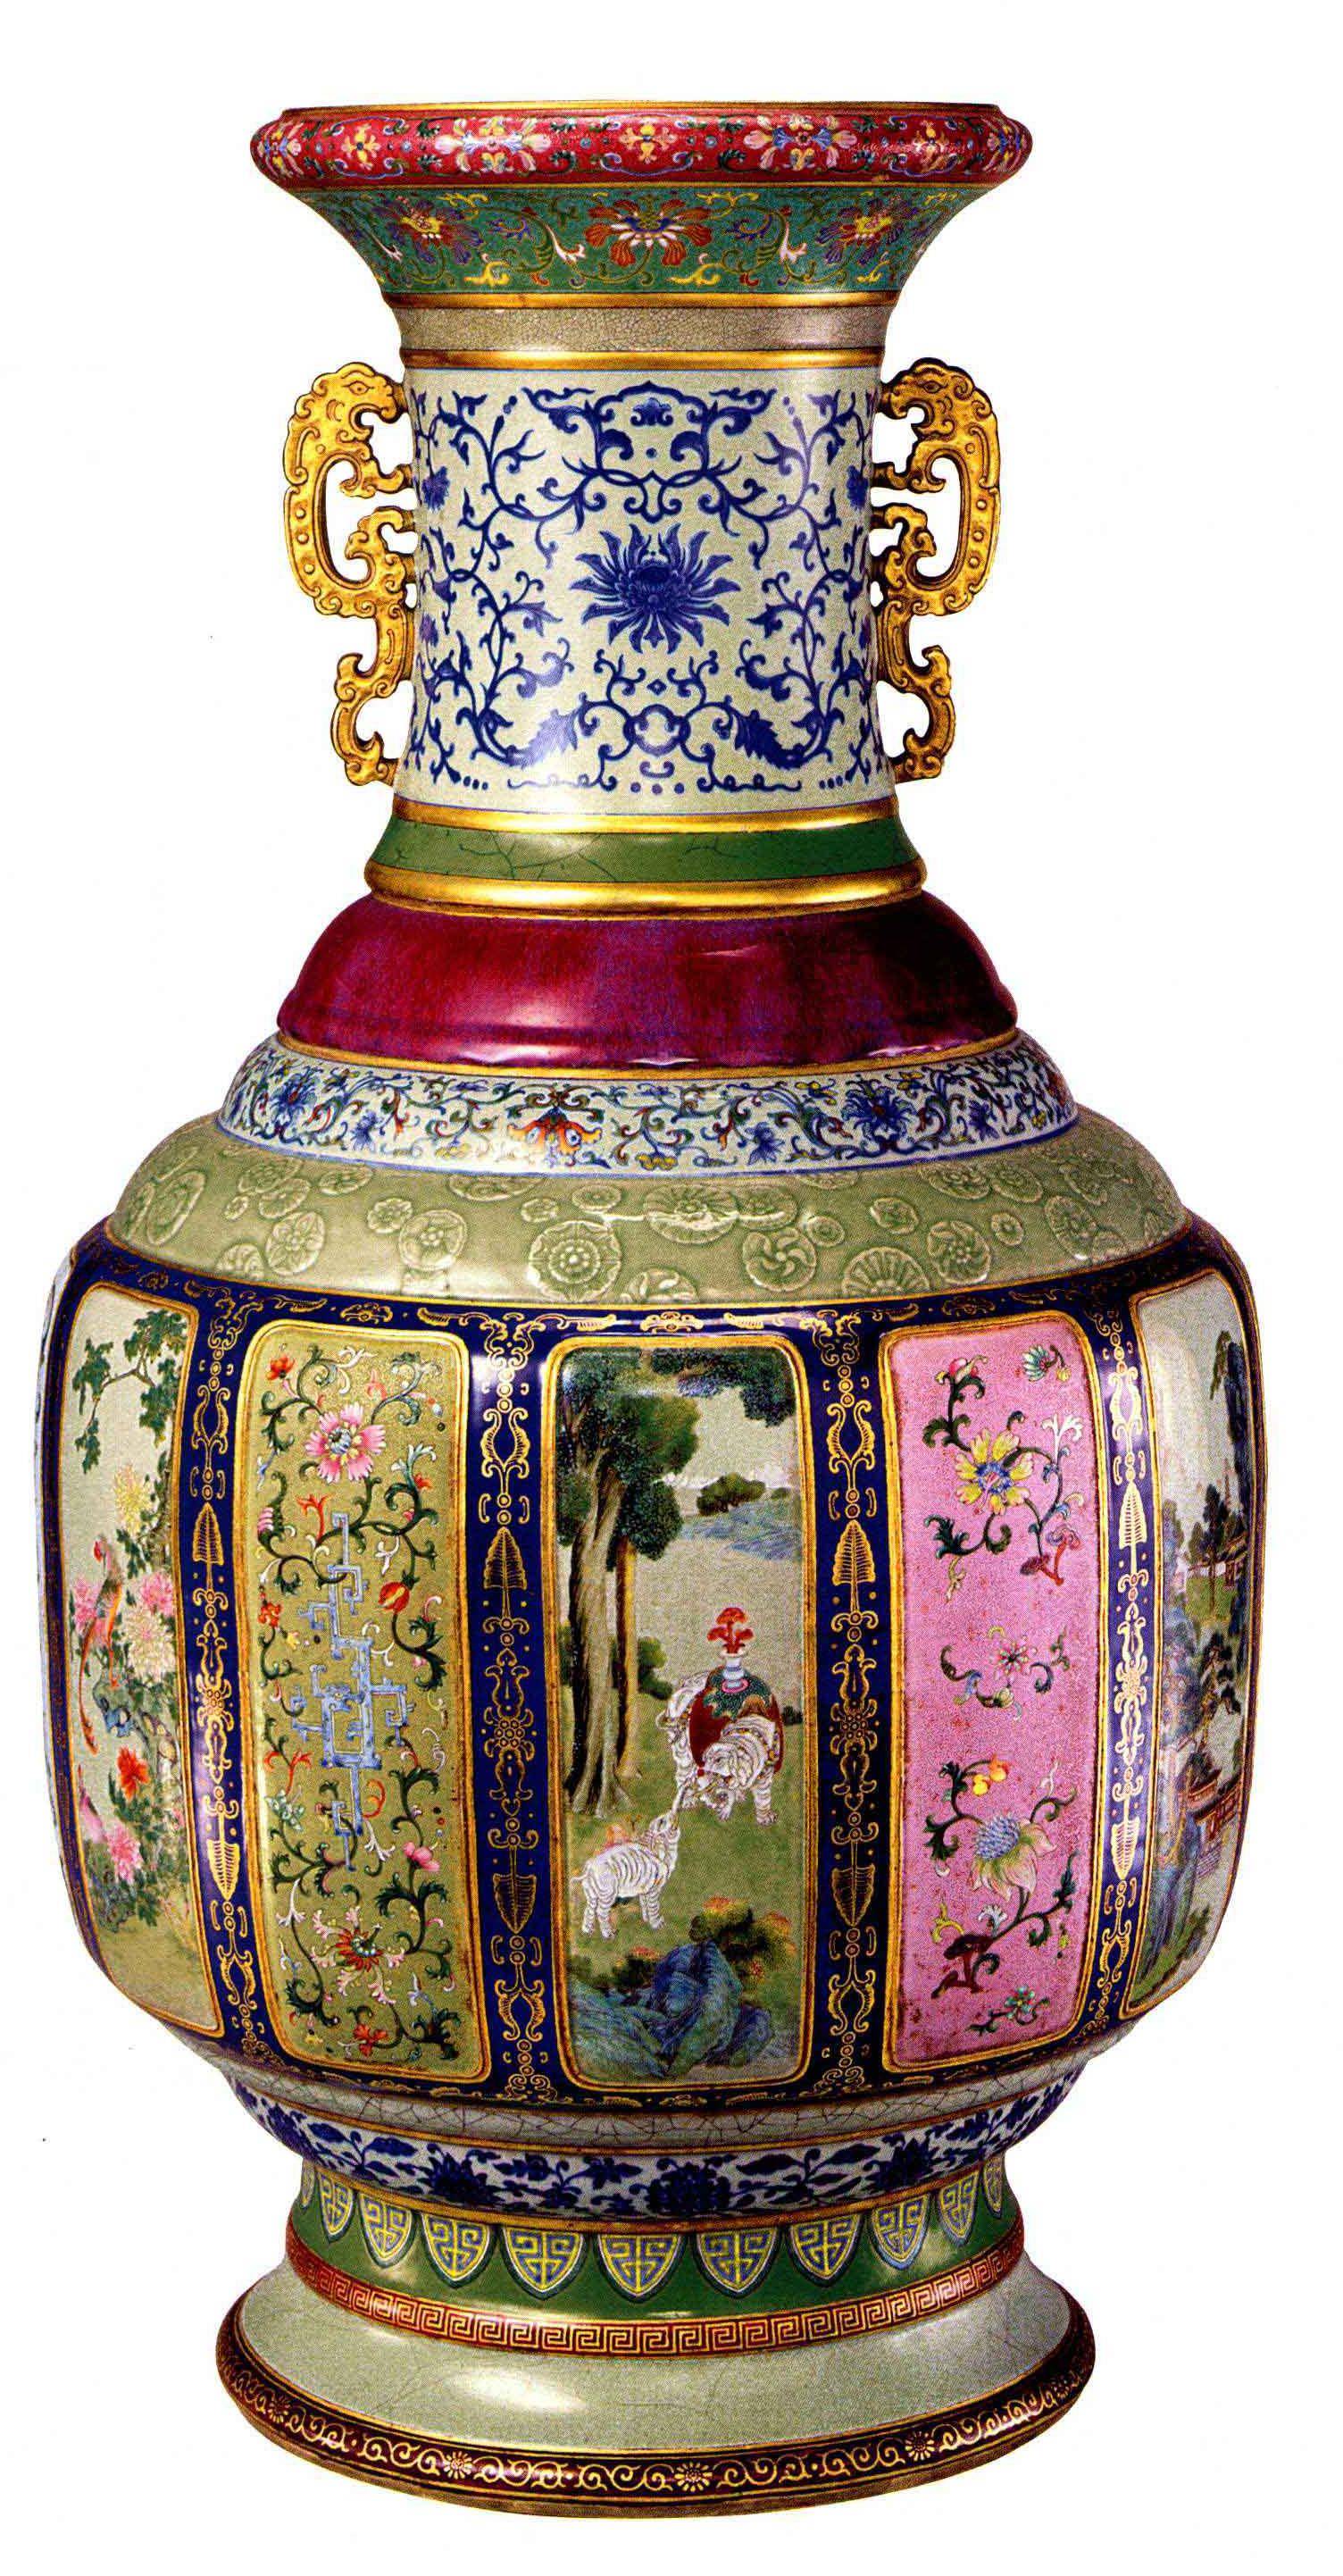 原创中国陶瓷文化有瓷母美称的釉彩大瓶传世仅此一件弥足珍贵